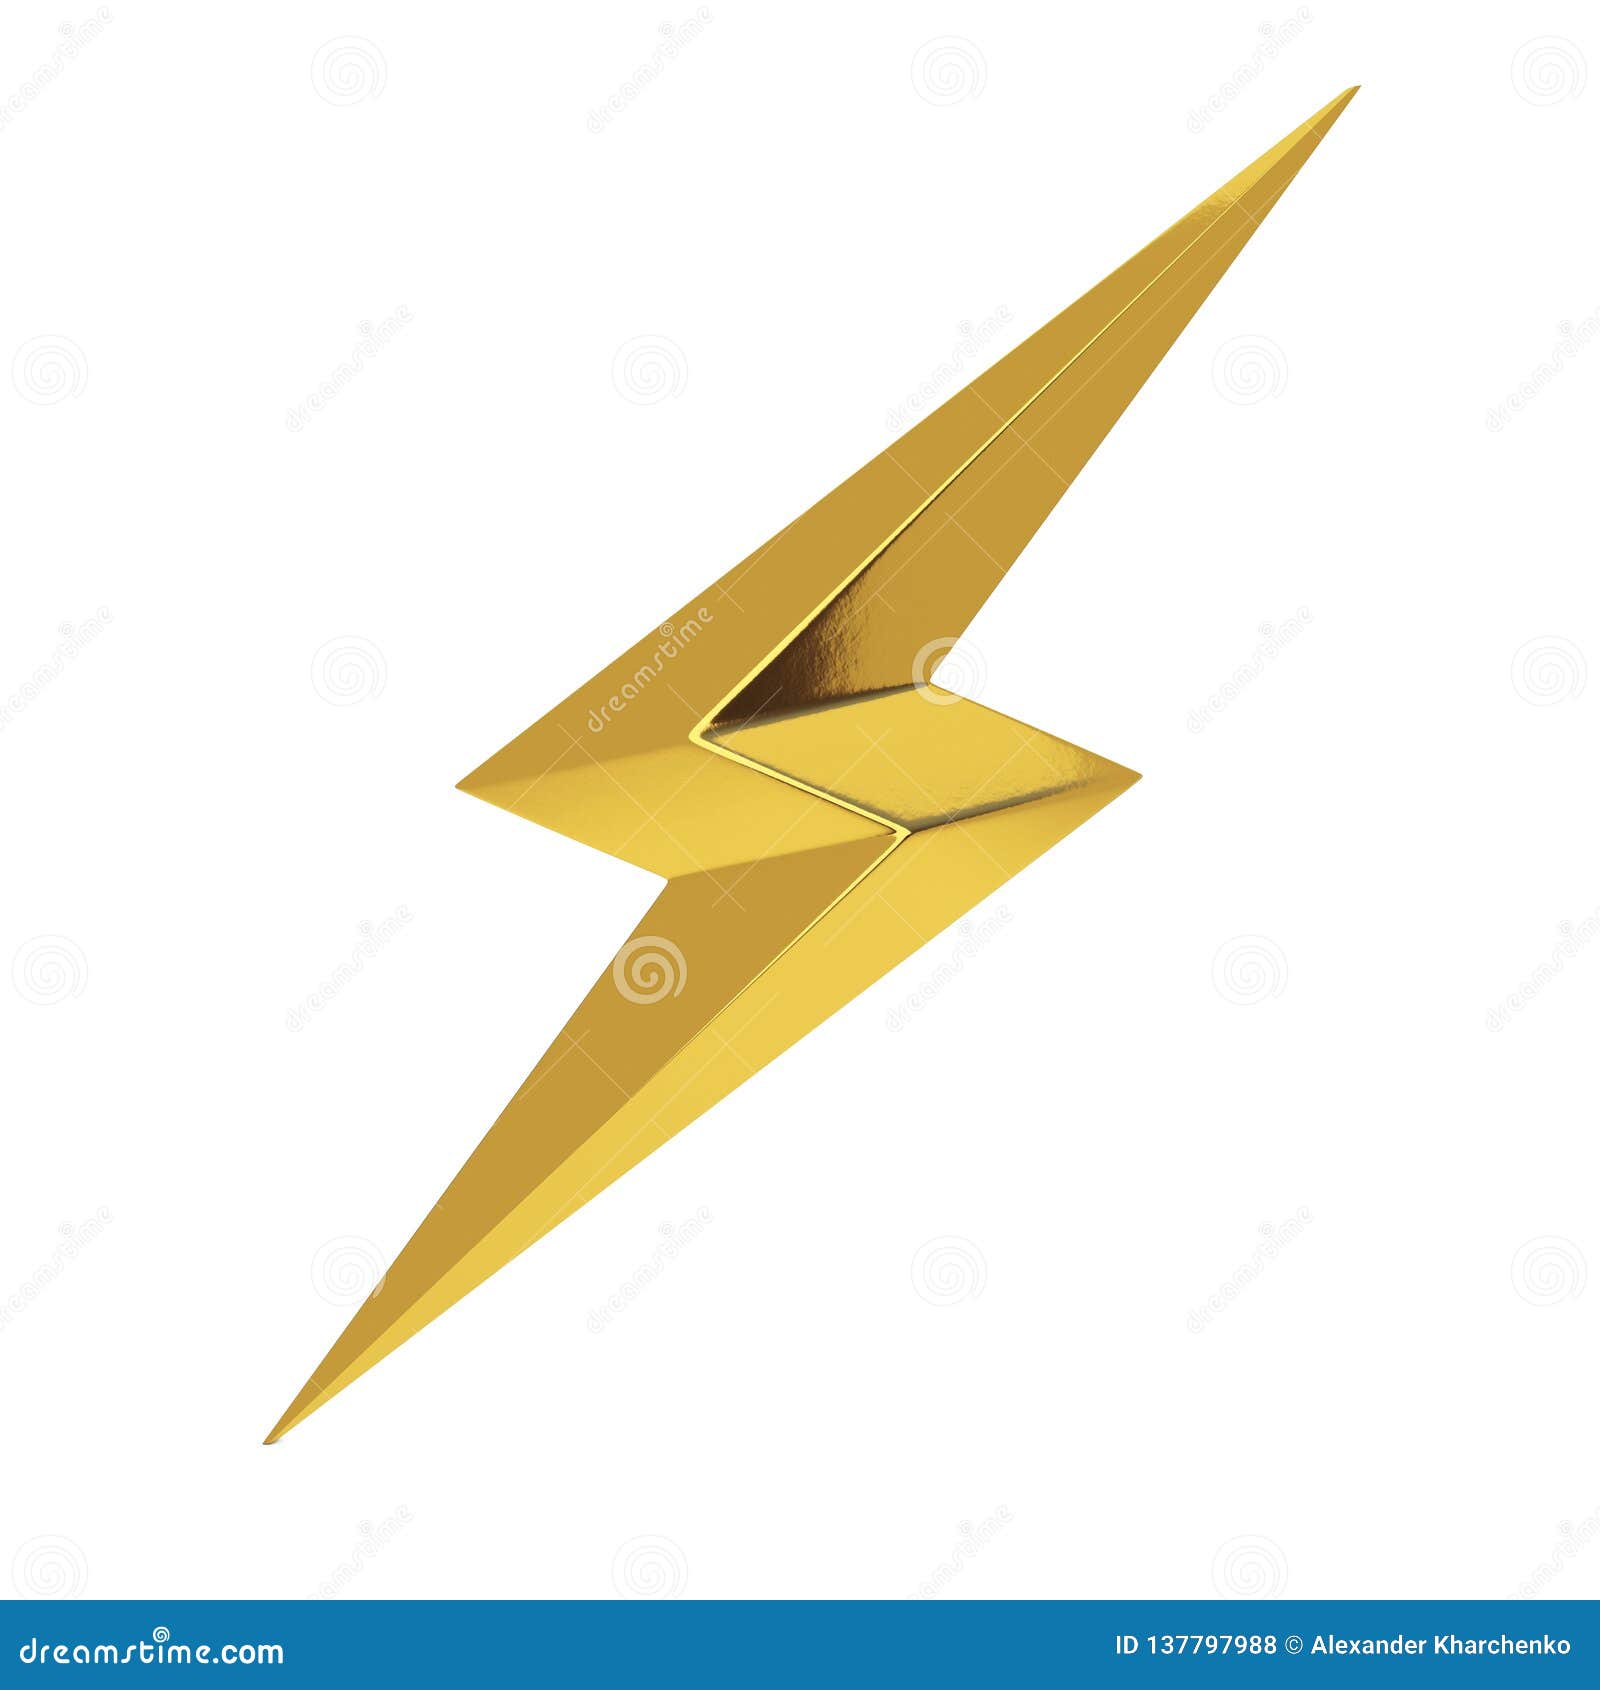 golden thunderbolt lighting icon. 3d rendering